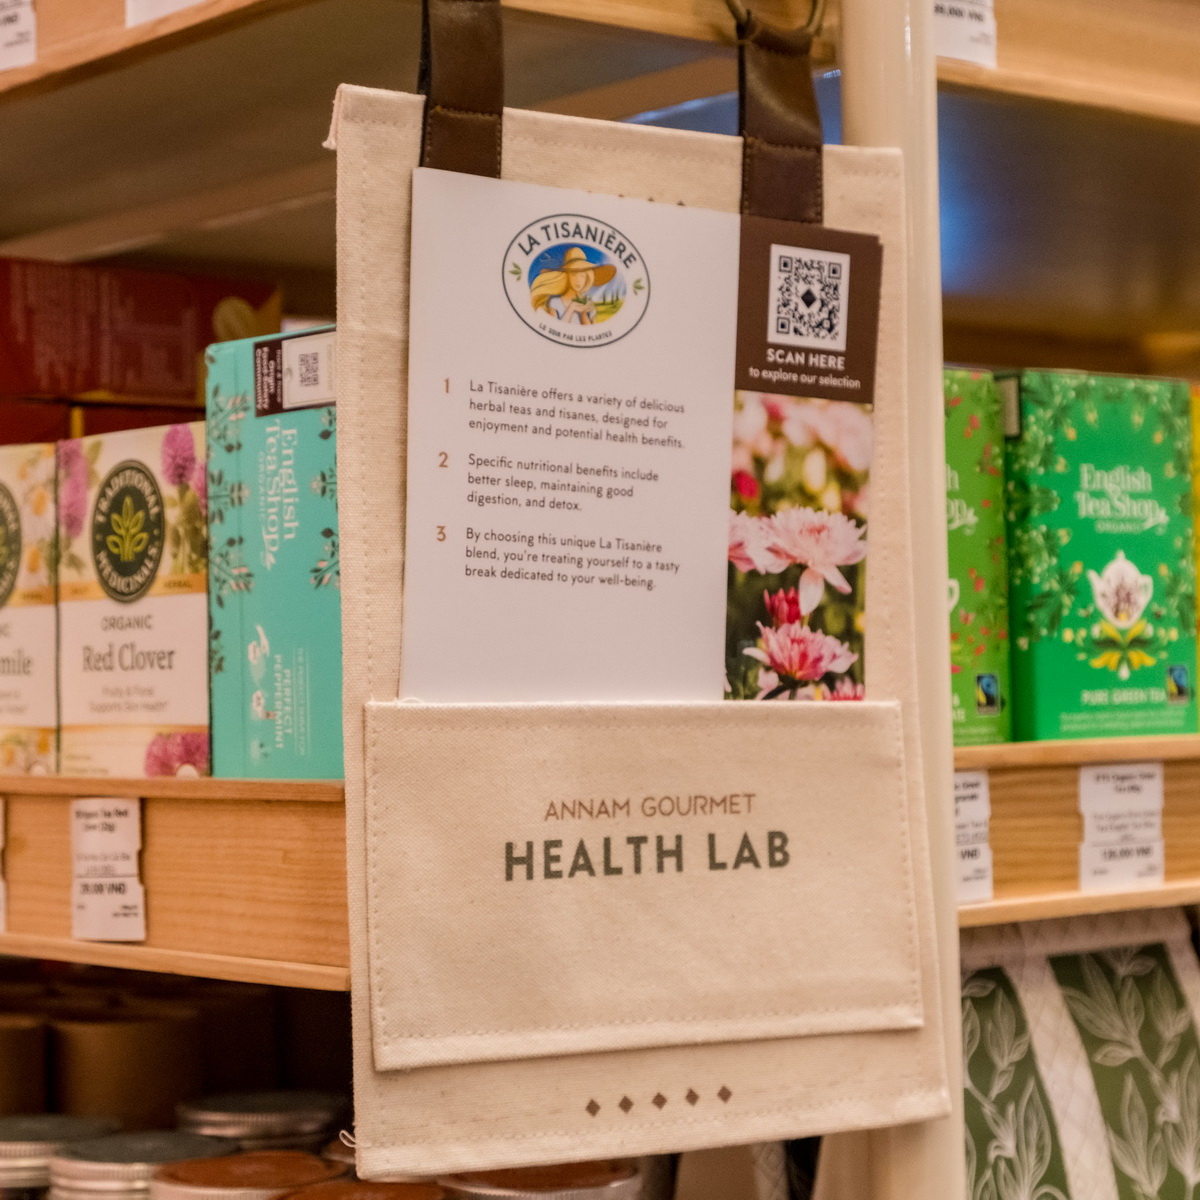 Annam Gourmet ra mắt "Health Lab" - Đổi mới khái niệm ăn uống lành mạnh tại việt nam